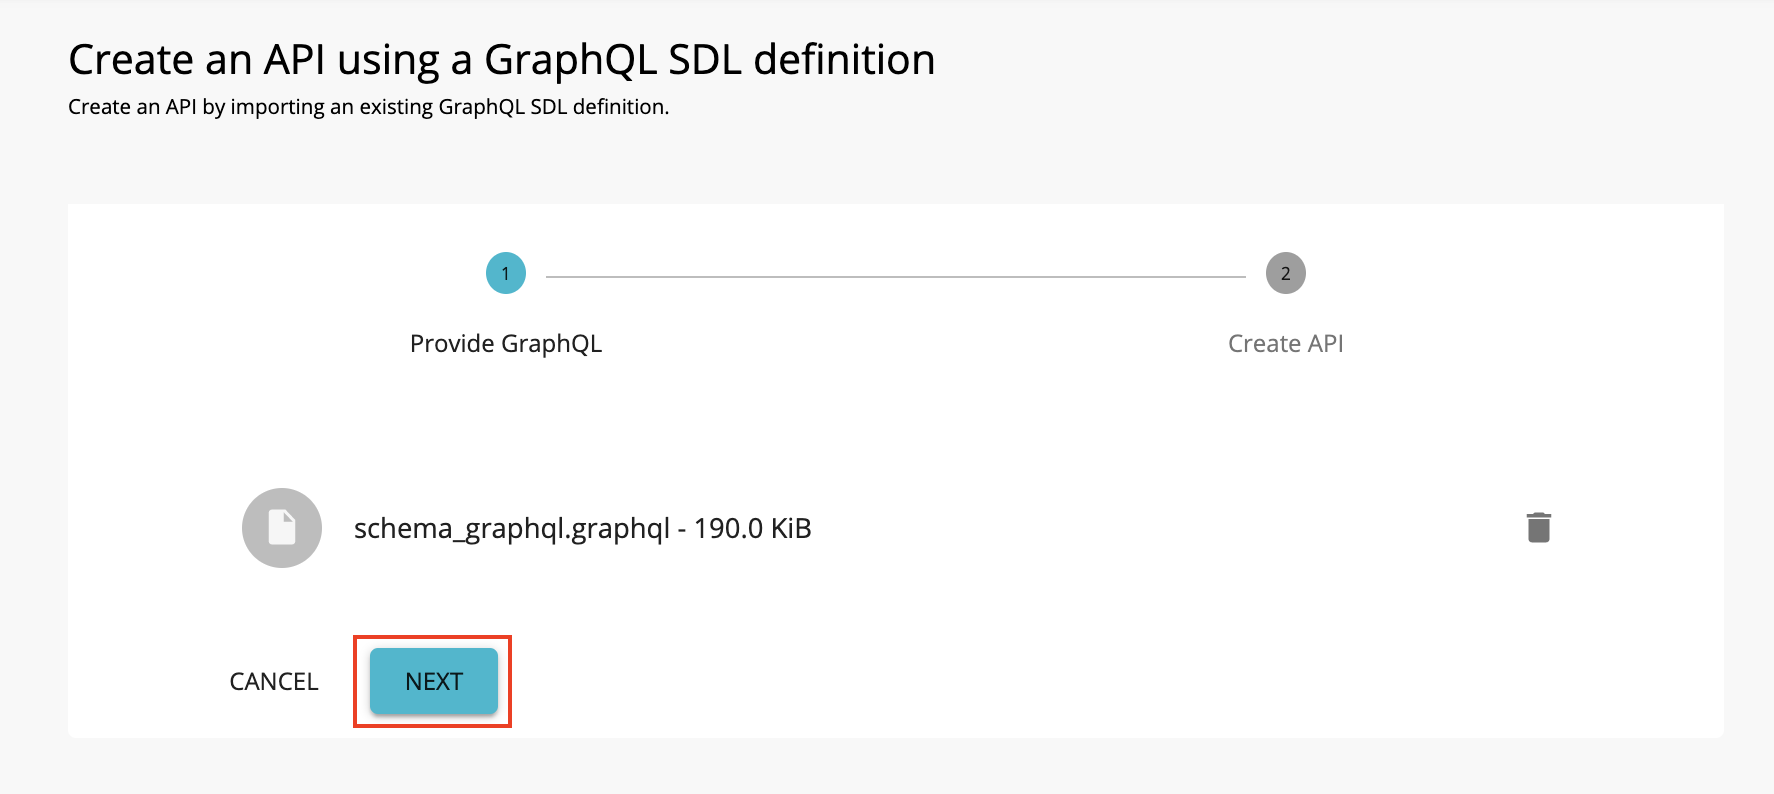 Import a graphQL schema by adding a file